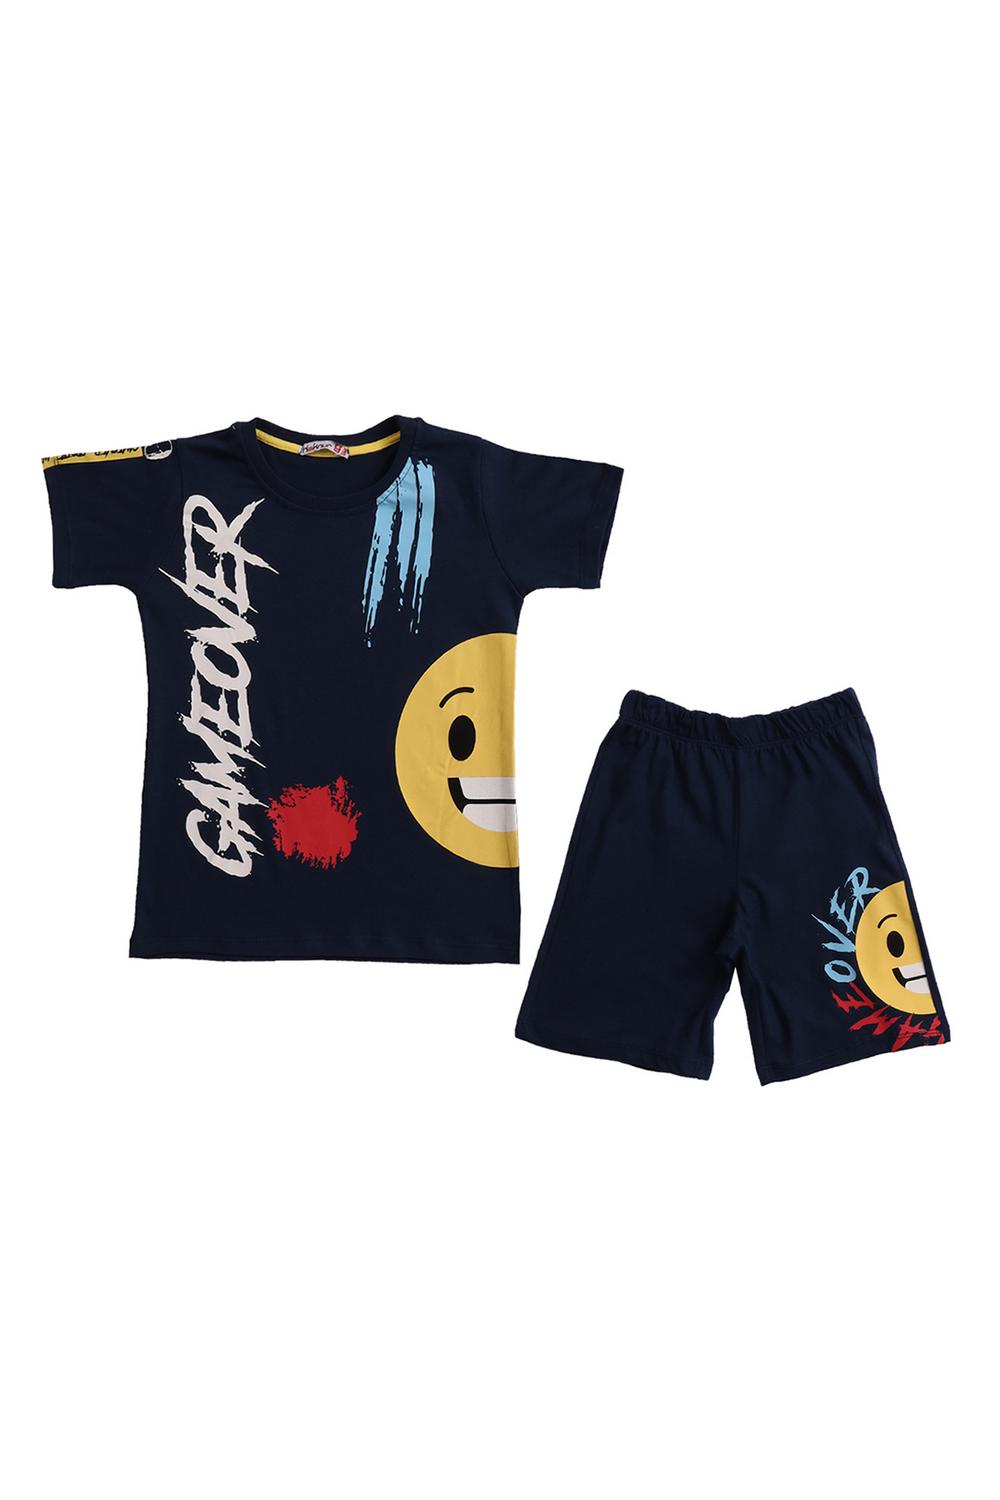 Boy Shorts T-Shirt Set / 2Y | 3Y | 4Y | 5Y - Kids Fashion Turkey